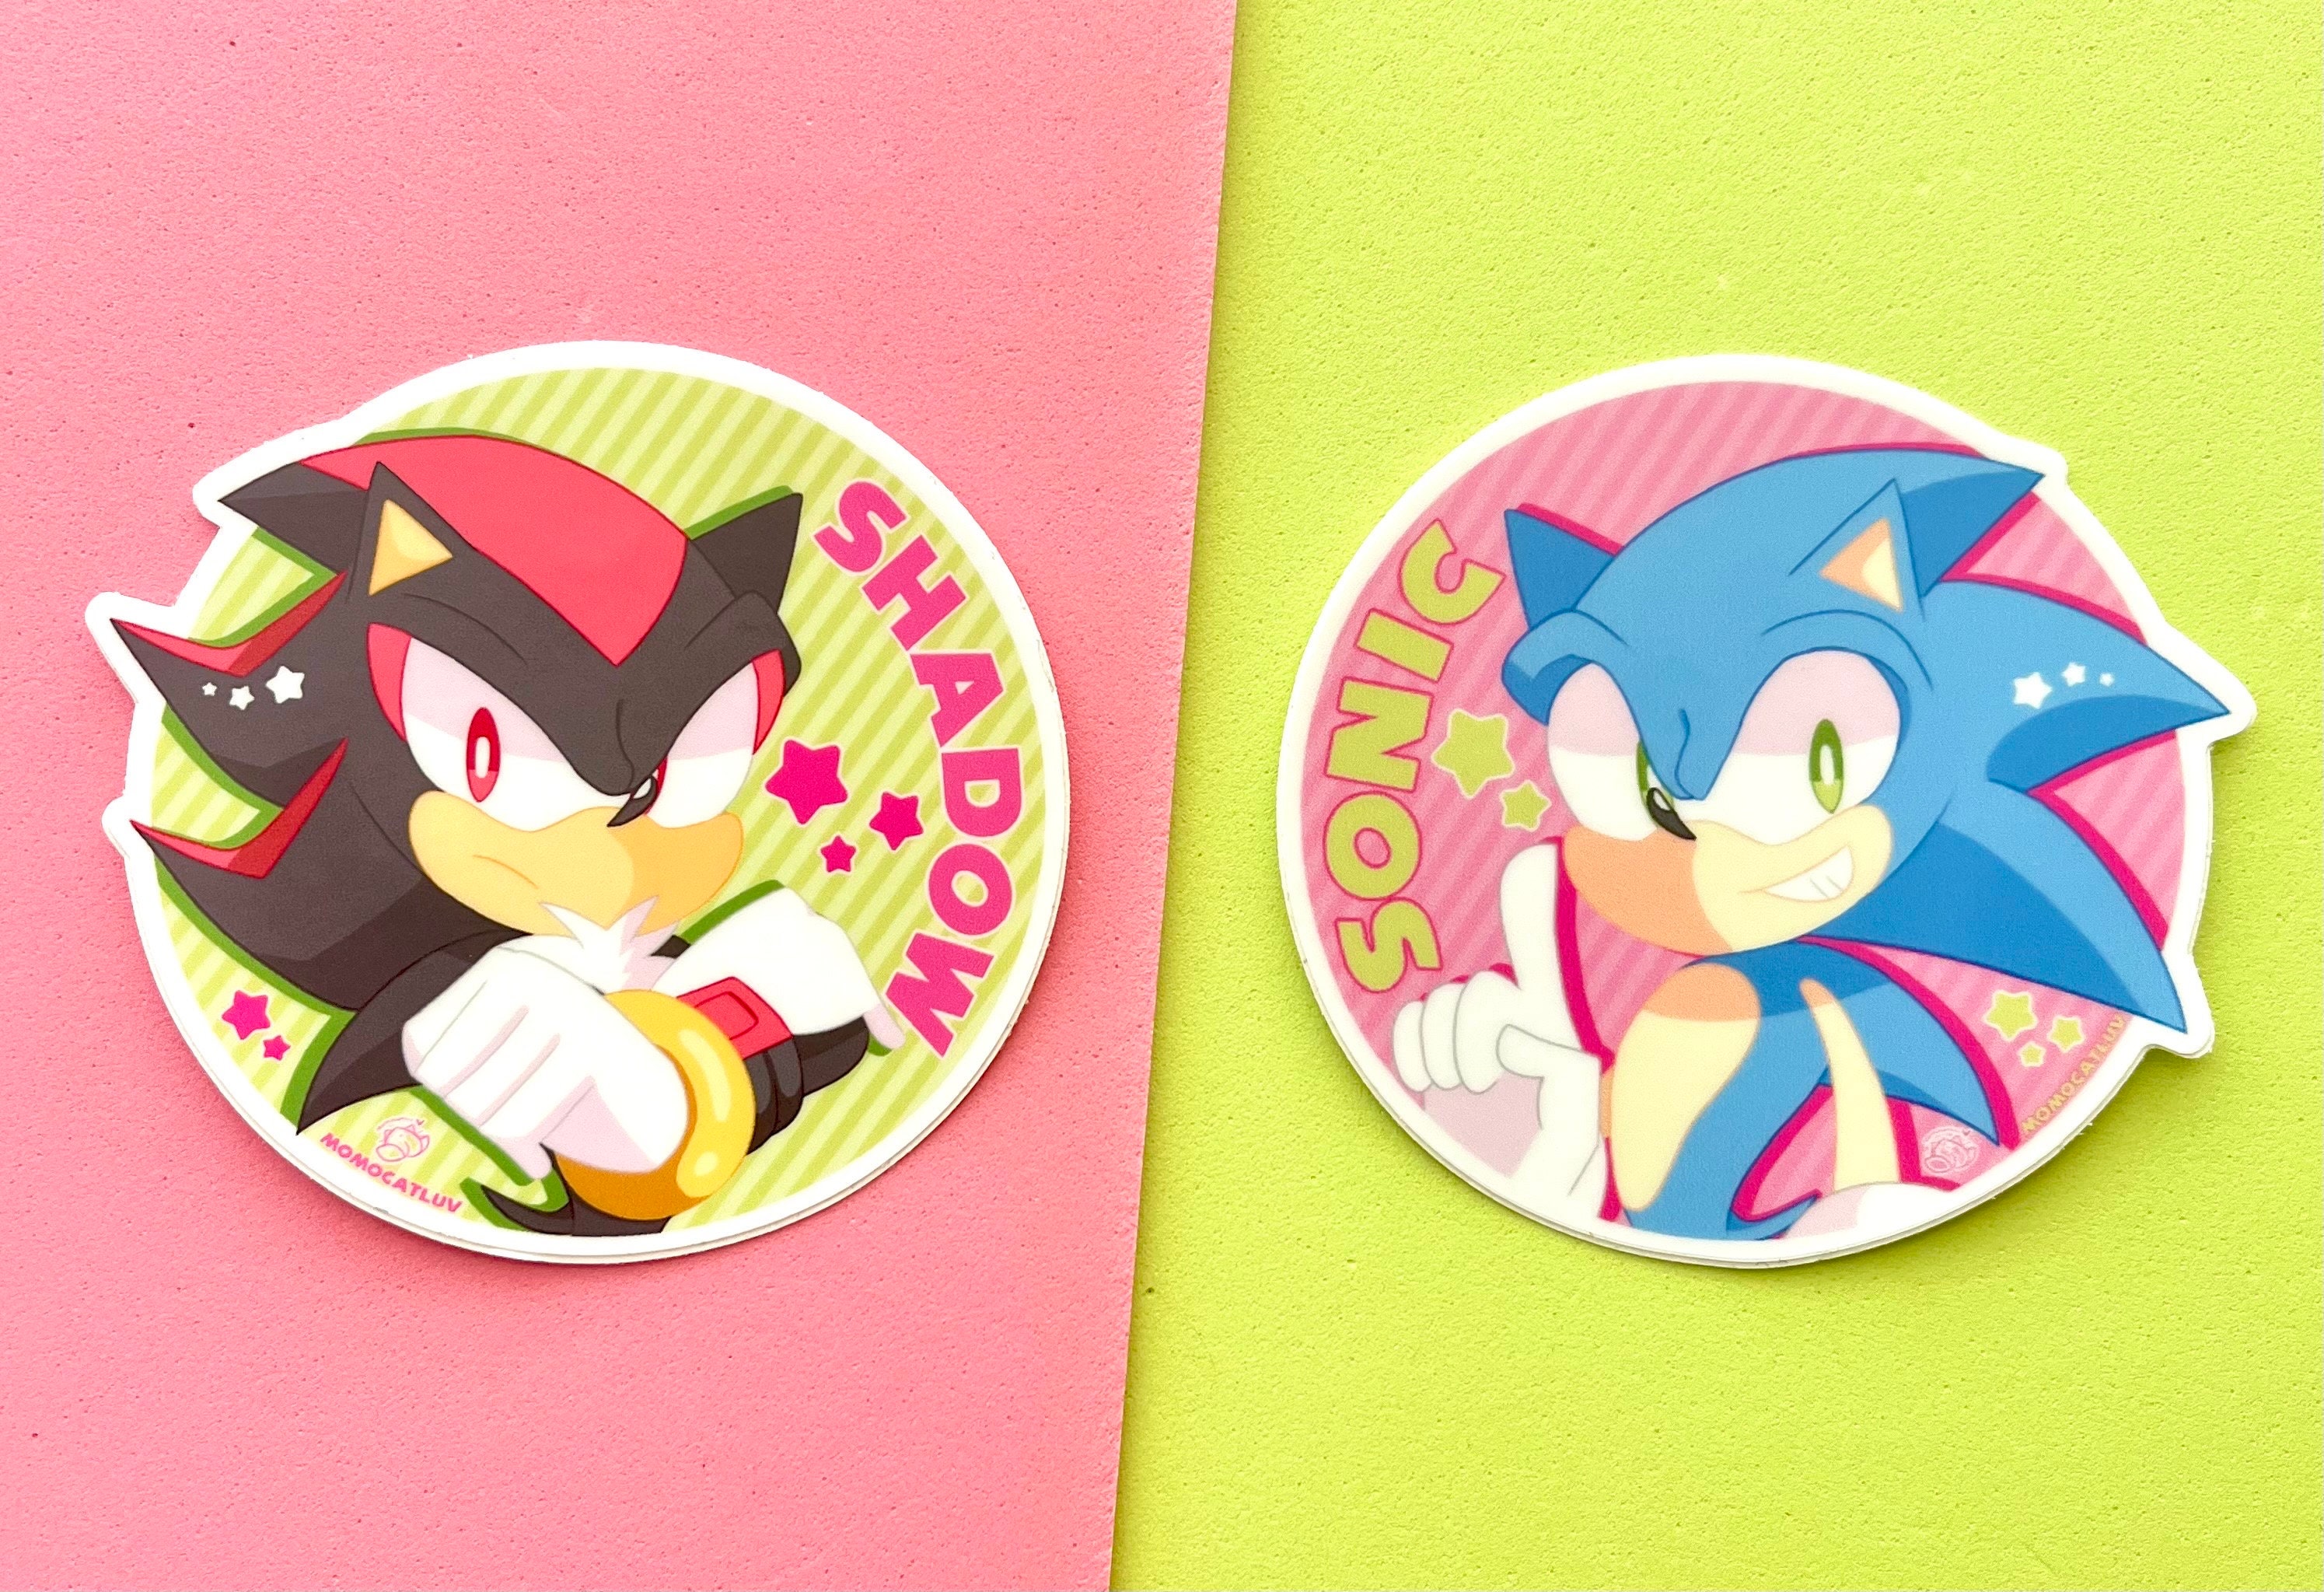 Sonic Hedgehog Sticker - Sonic Hedgehog Shadow - Discover & Share GIFs